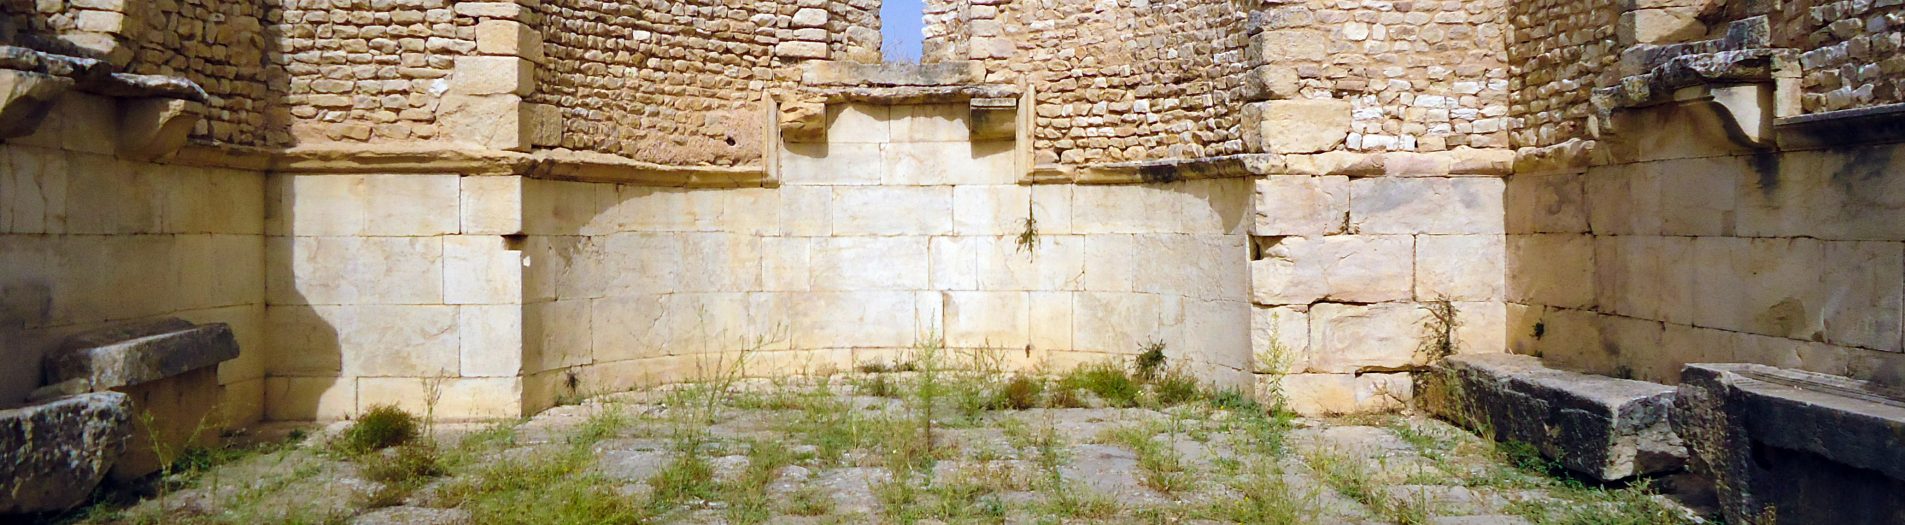 Les lieux de culte et les nécropoles romaines en Tunisie